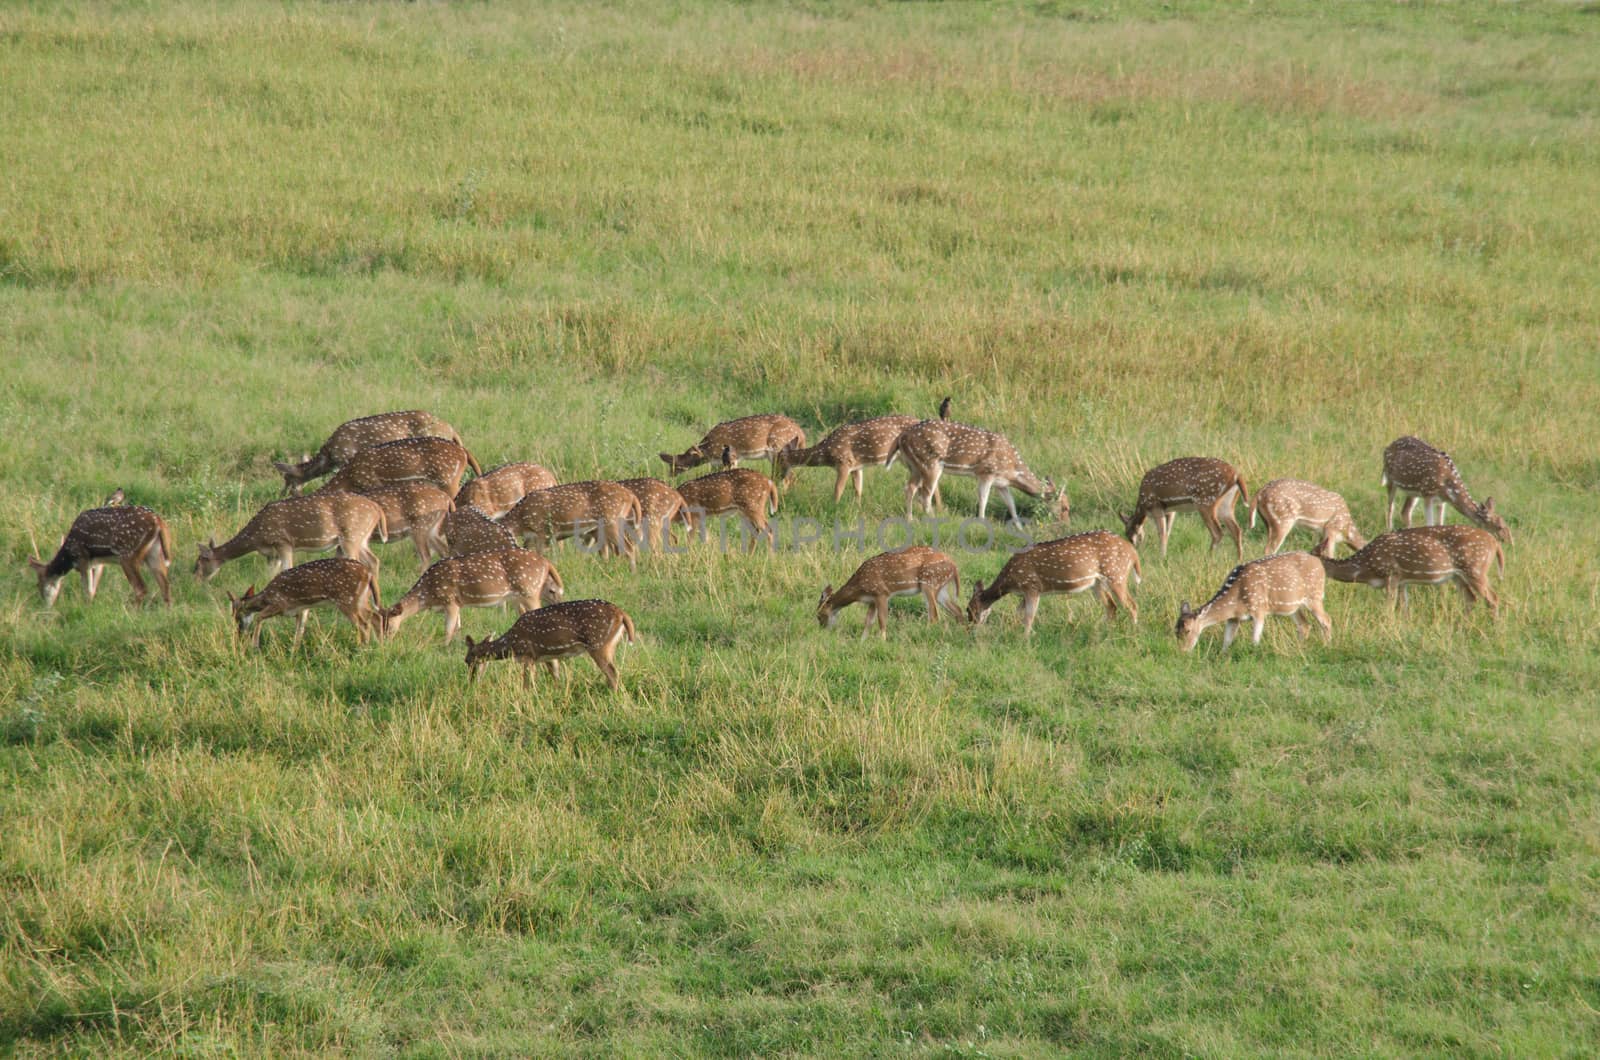 Chital, Cheetal, Spotted deer, Axis deer walk in glassland by visanuwit